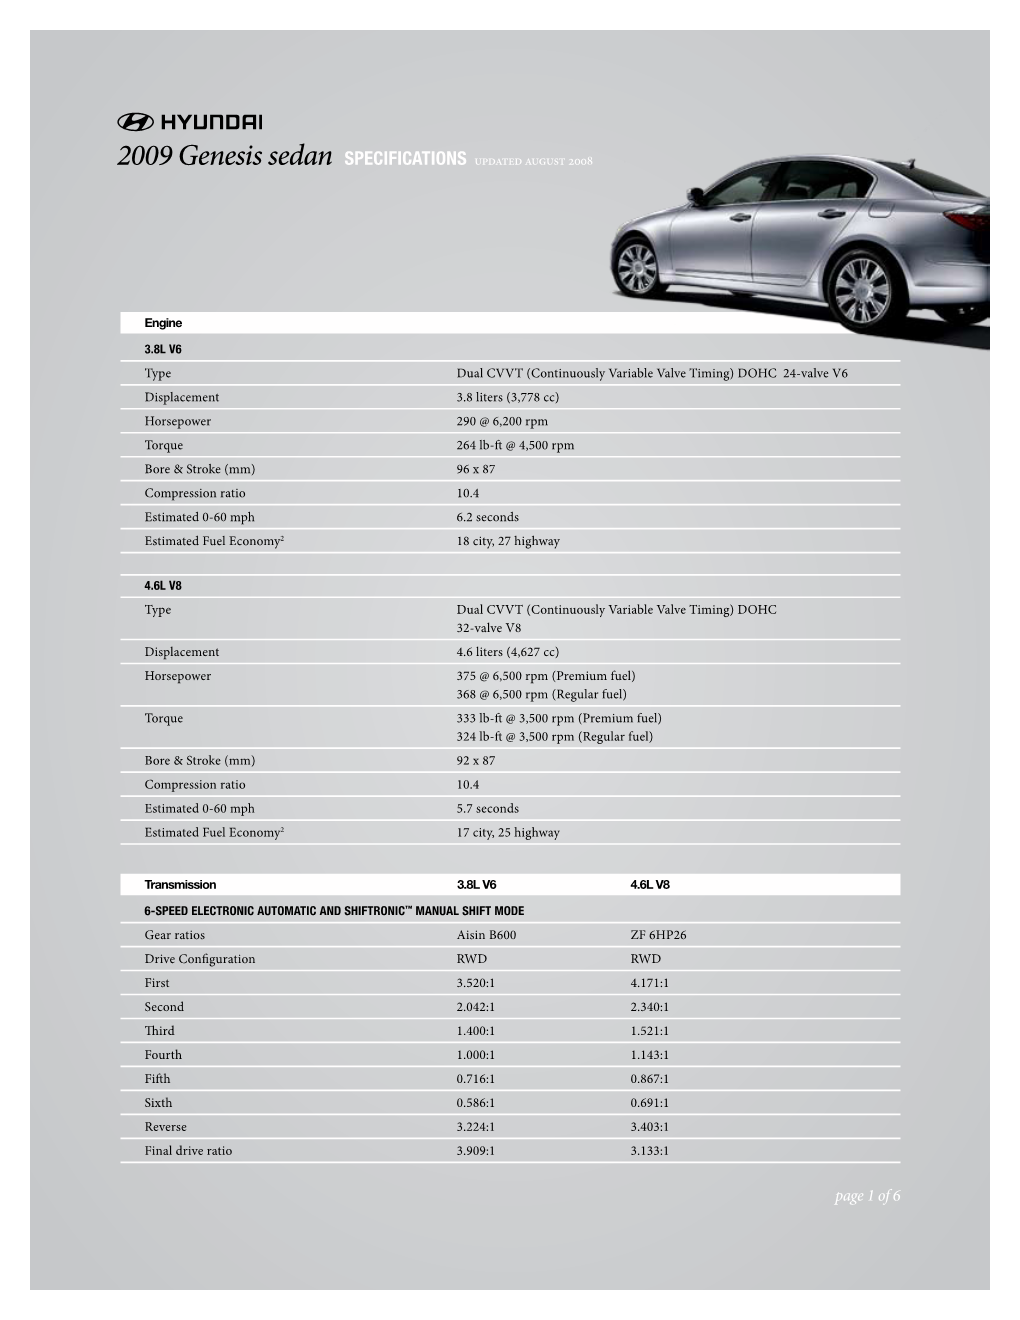 2009 Genesis Sedan Specifications Updated August 2008